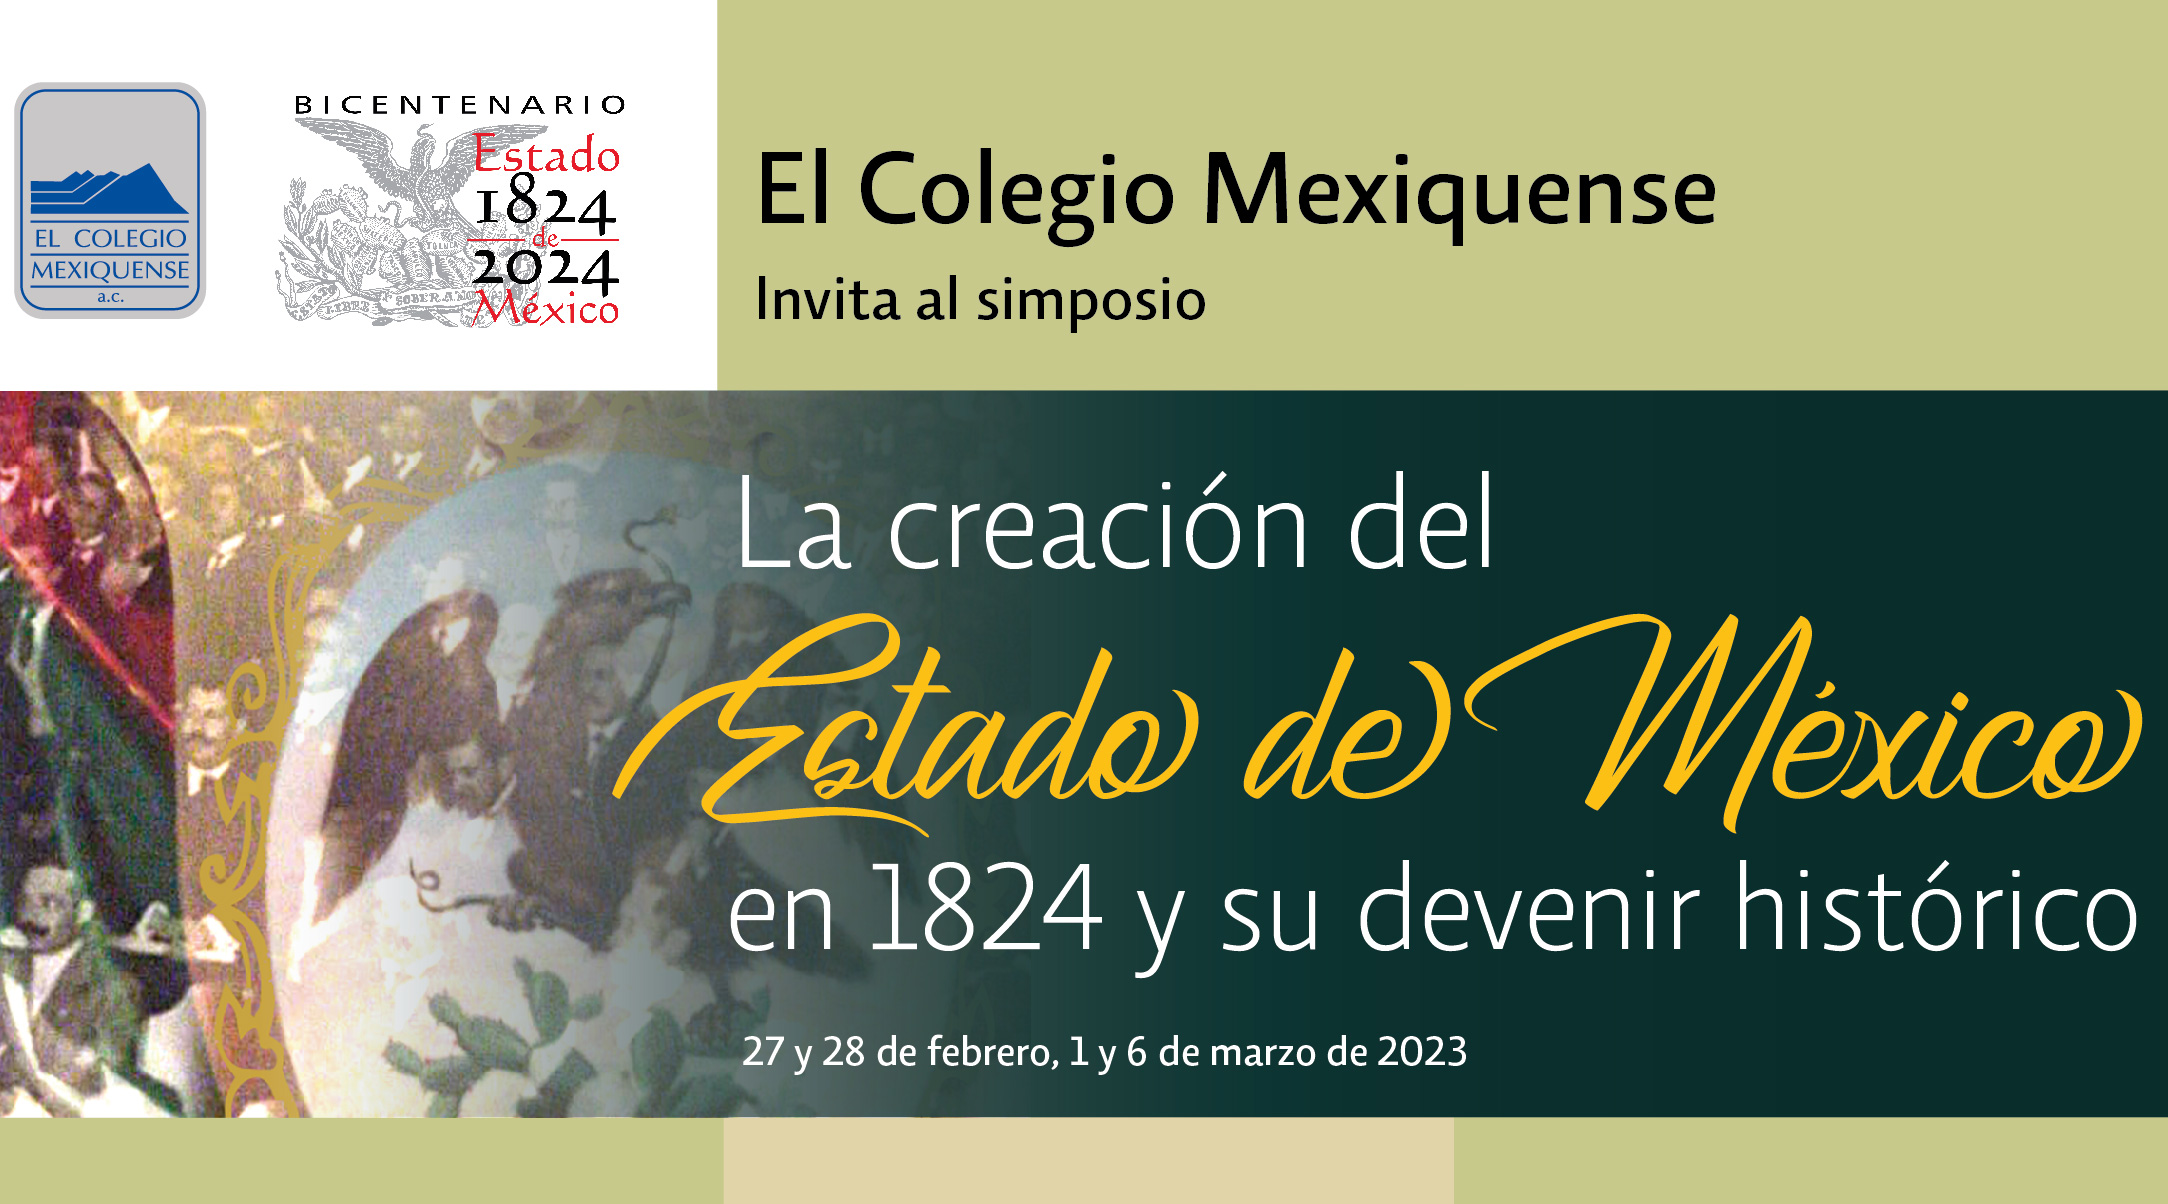 Simposio. La creación del Estado de México en 1824 y su devenir histórico